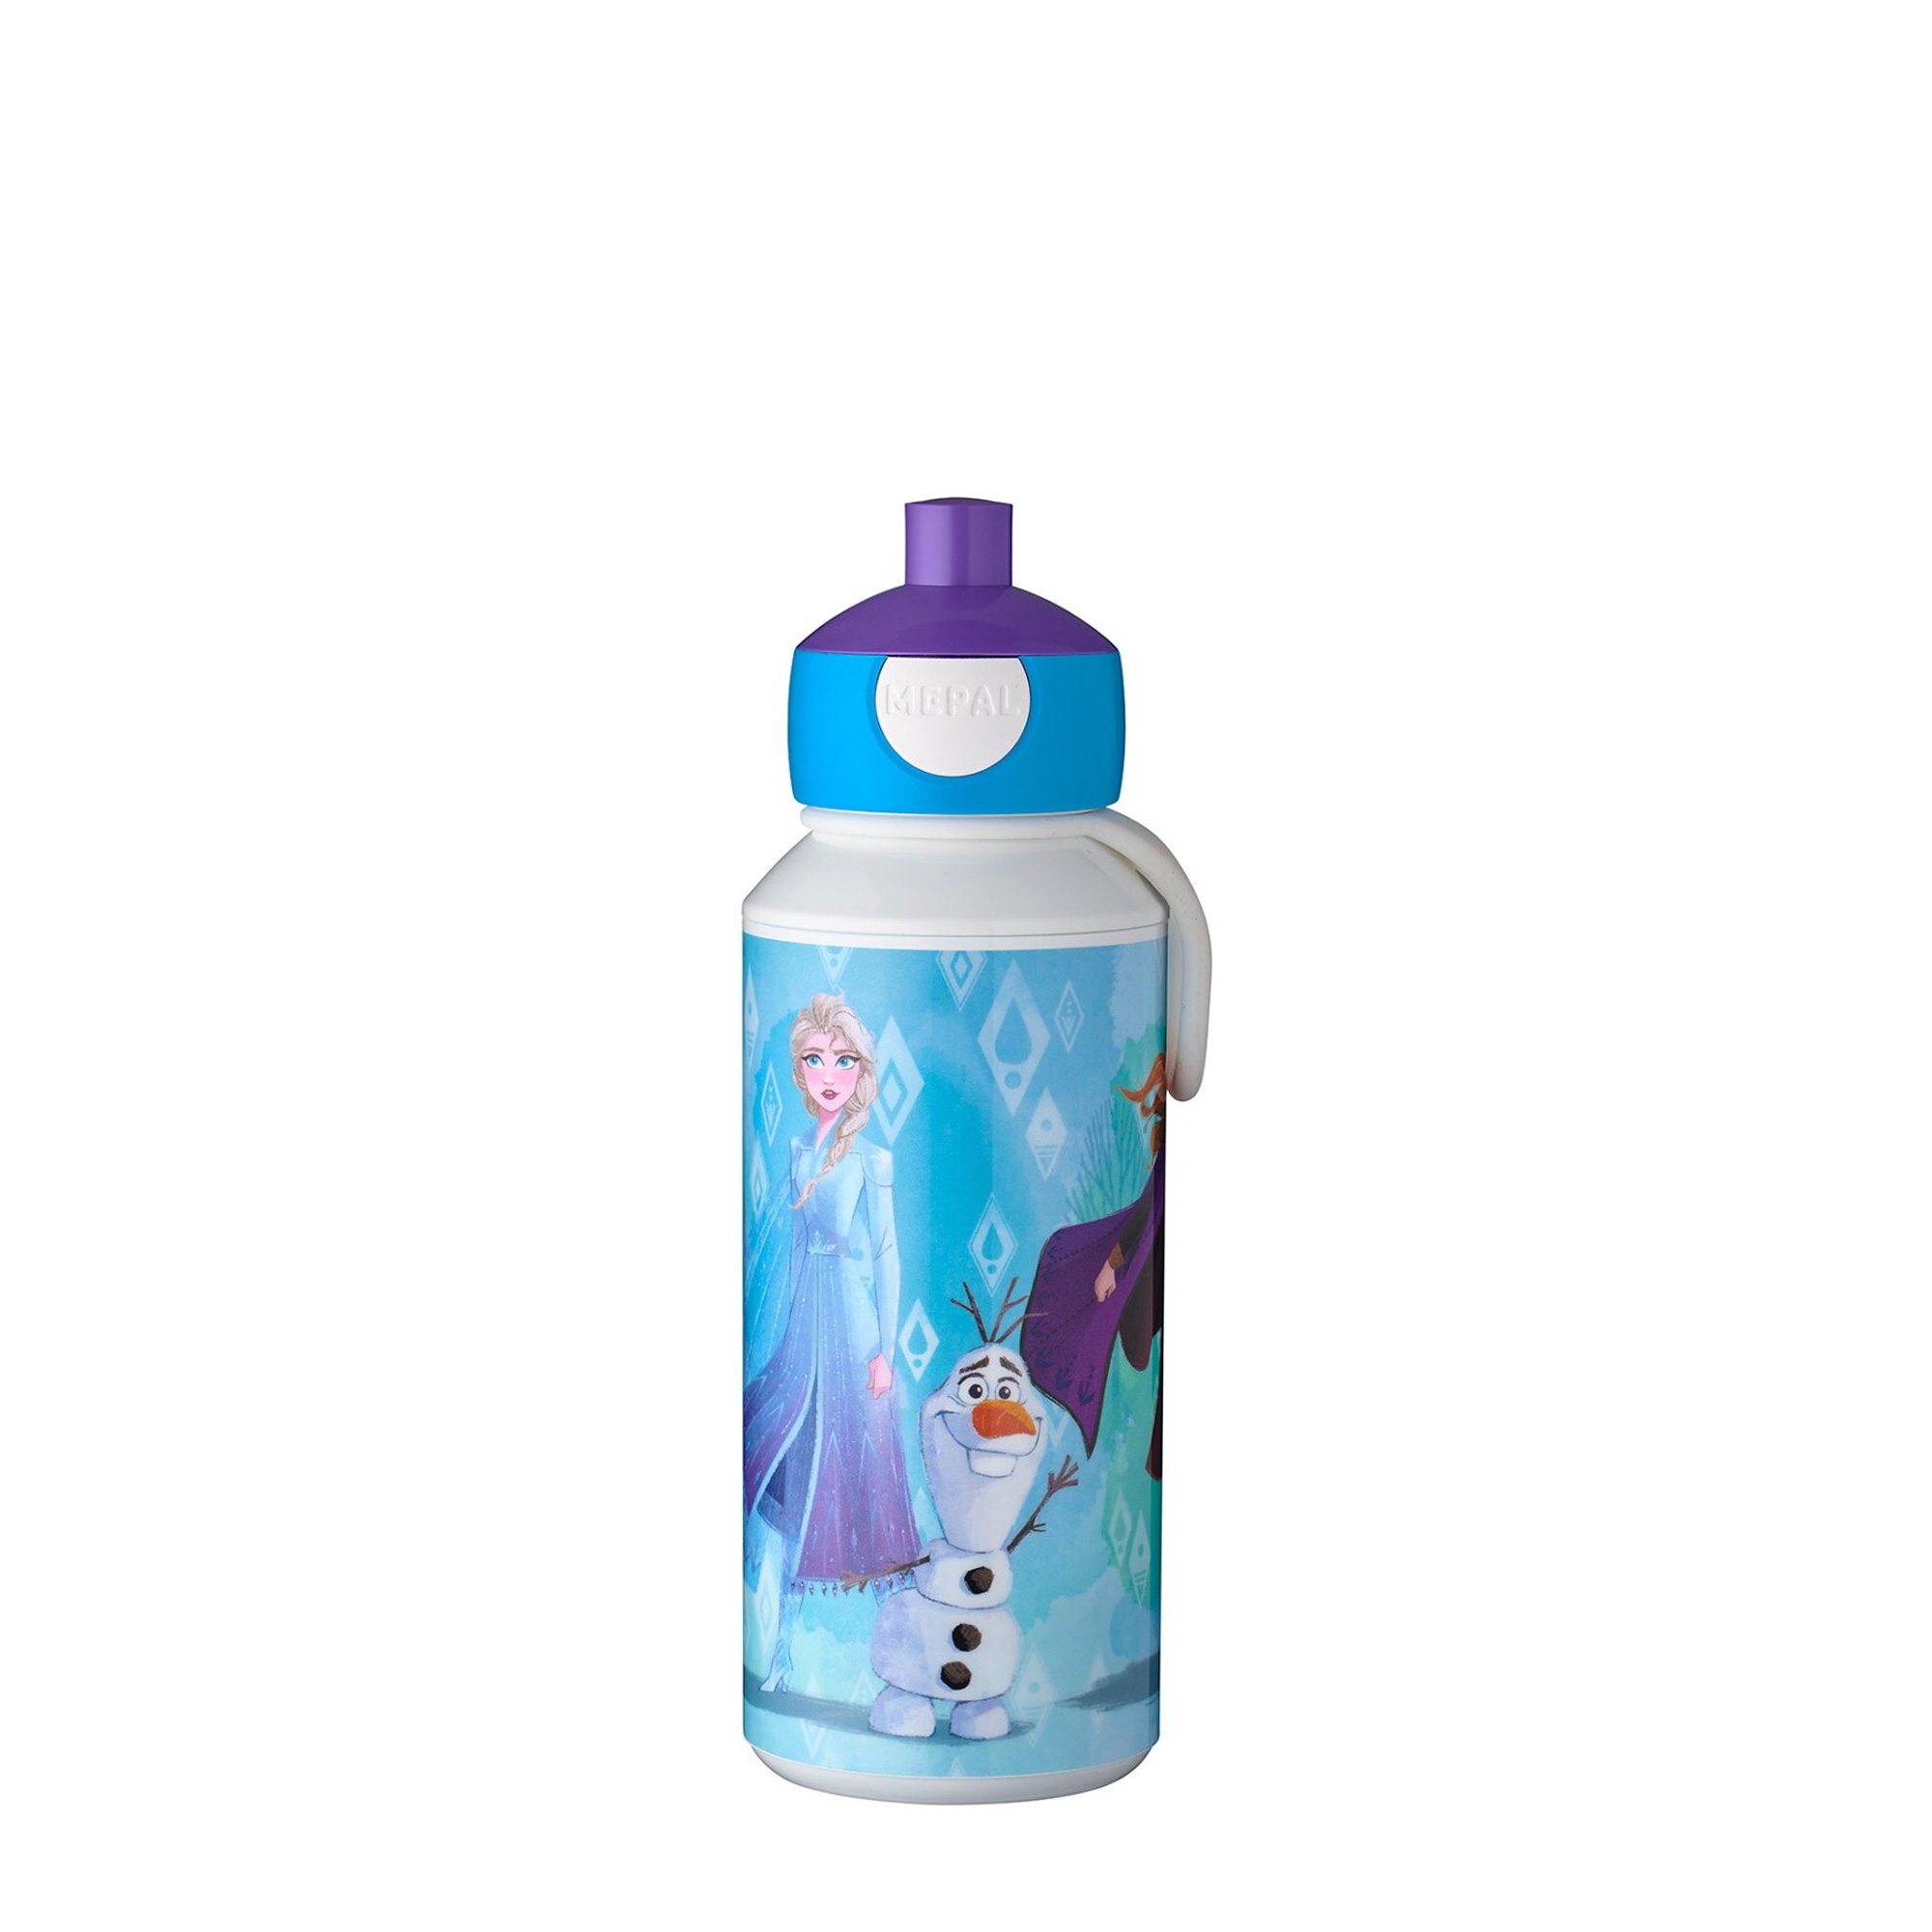 Mepal - Pop-Up Trinkflasche Druckknopf - verschiedene Farben